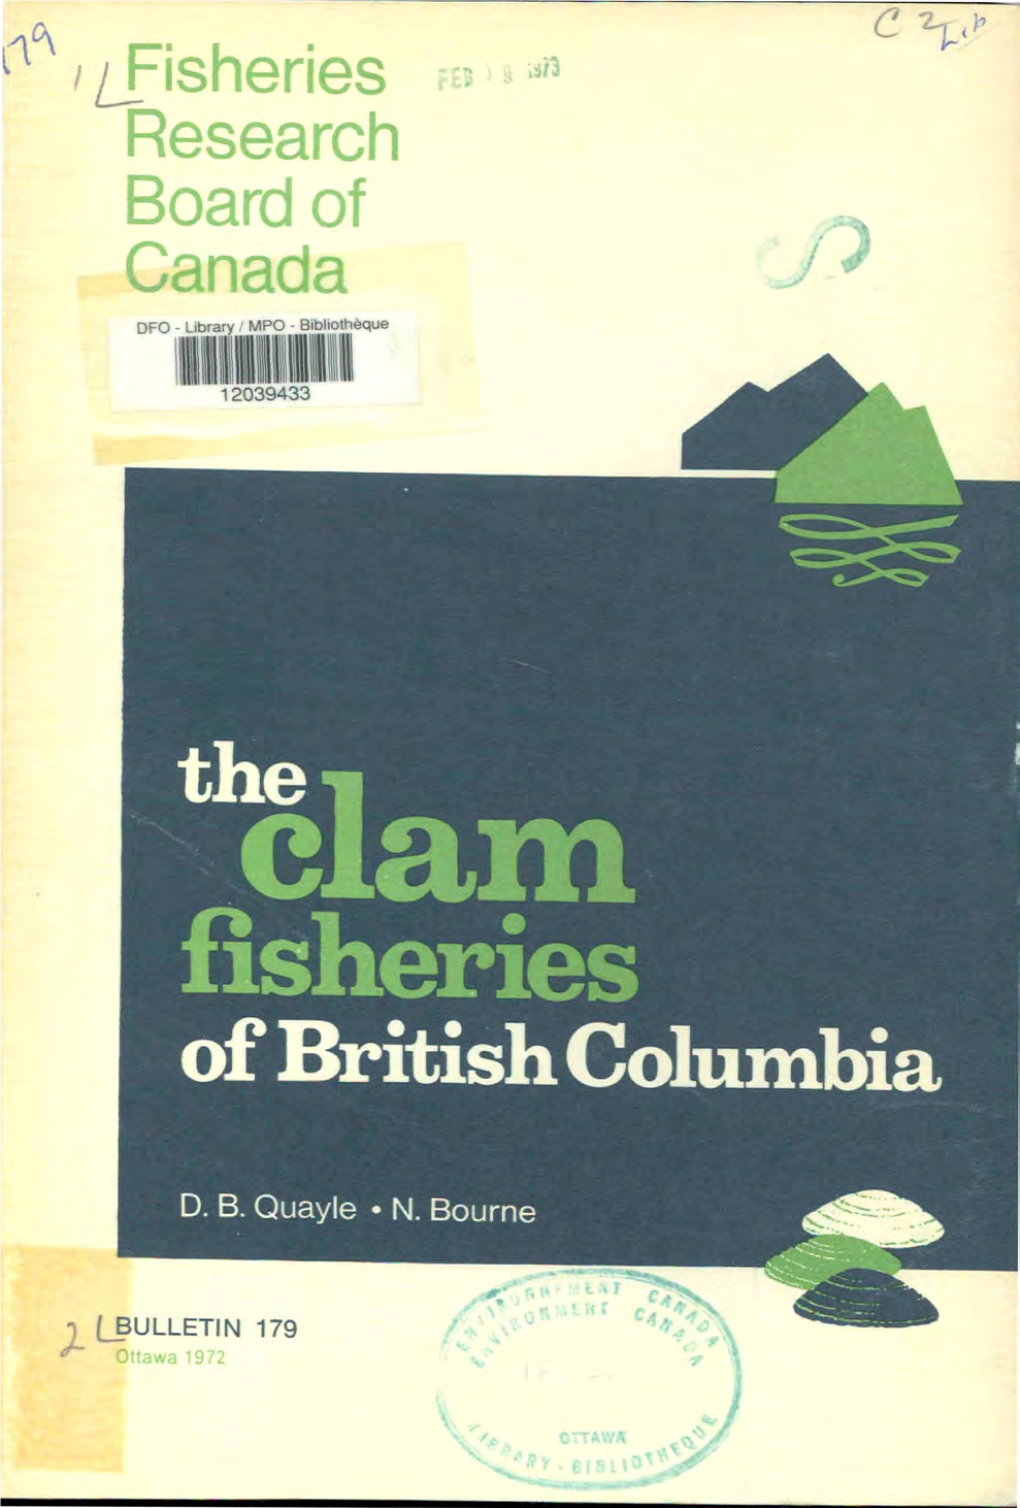 Fisheries Research Board of Canada DFO - Library ' MPO Bibliothèque